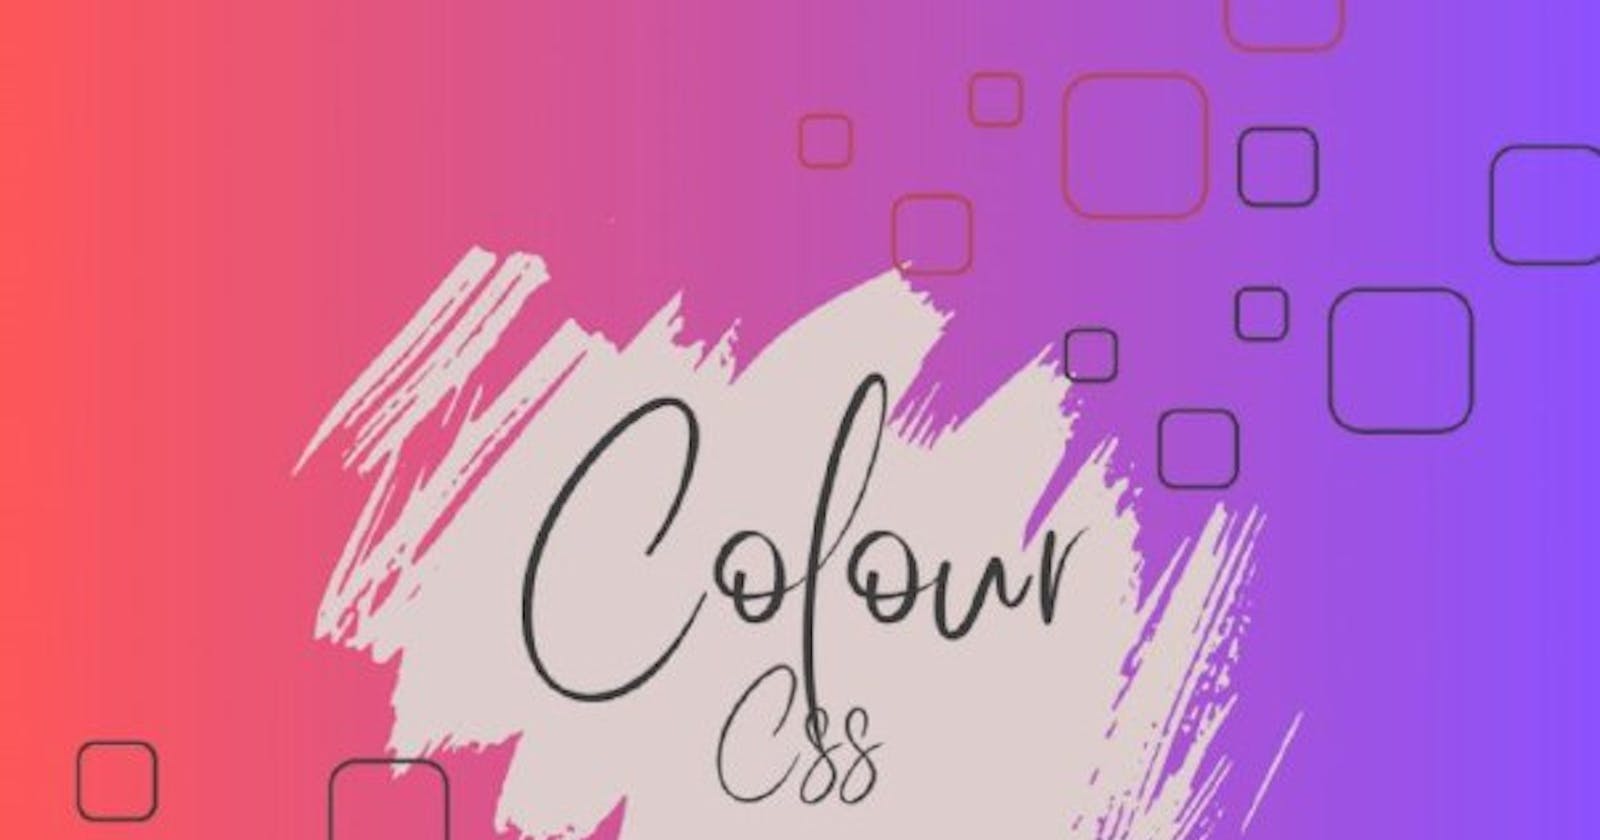 CSS color schemes